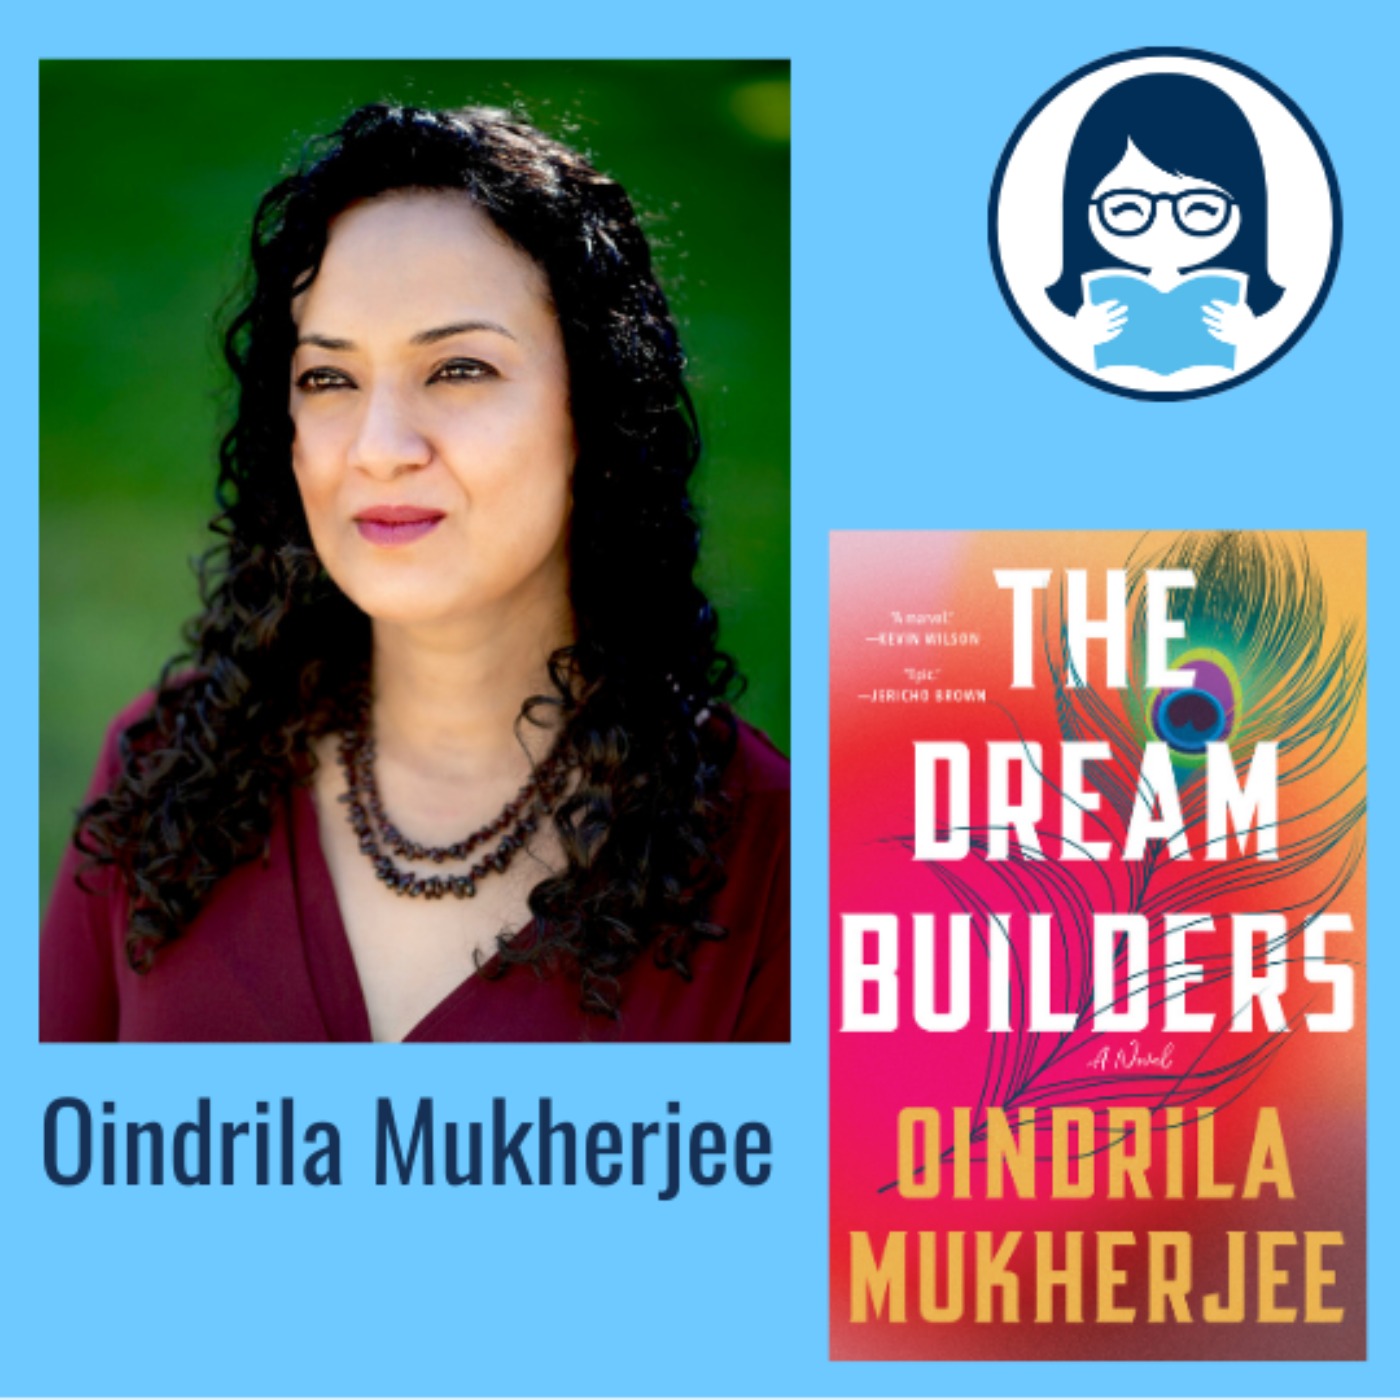 Oindrila Mukherjee, THE DREAM BUILDERS